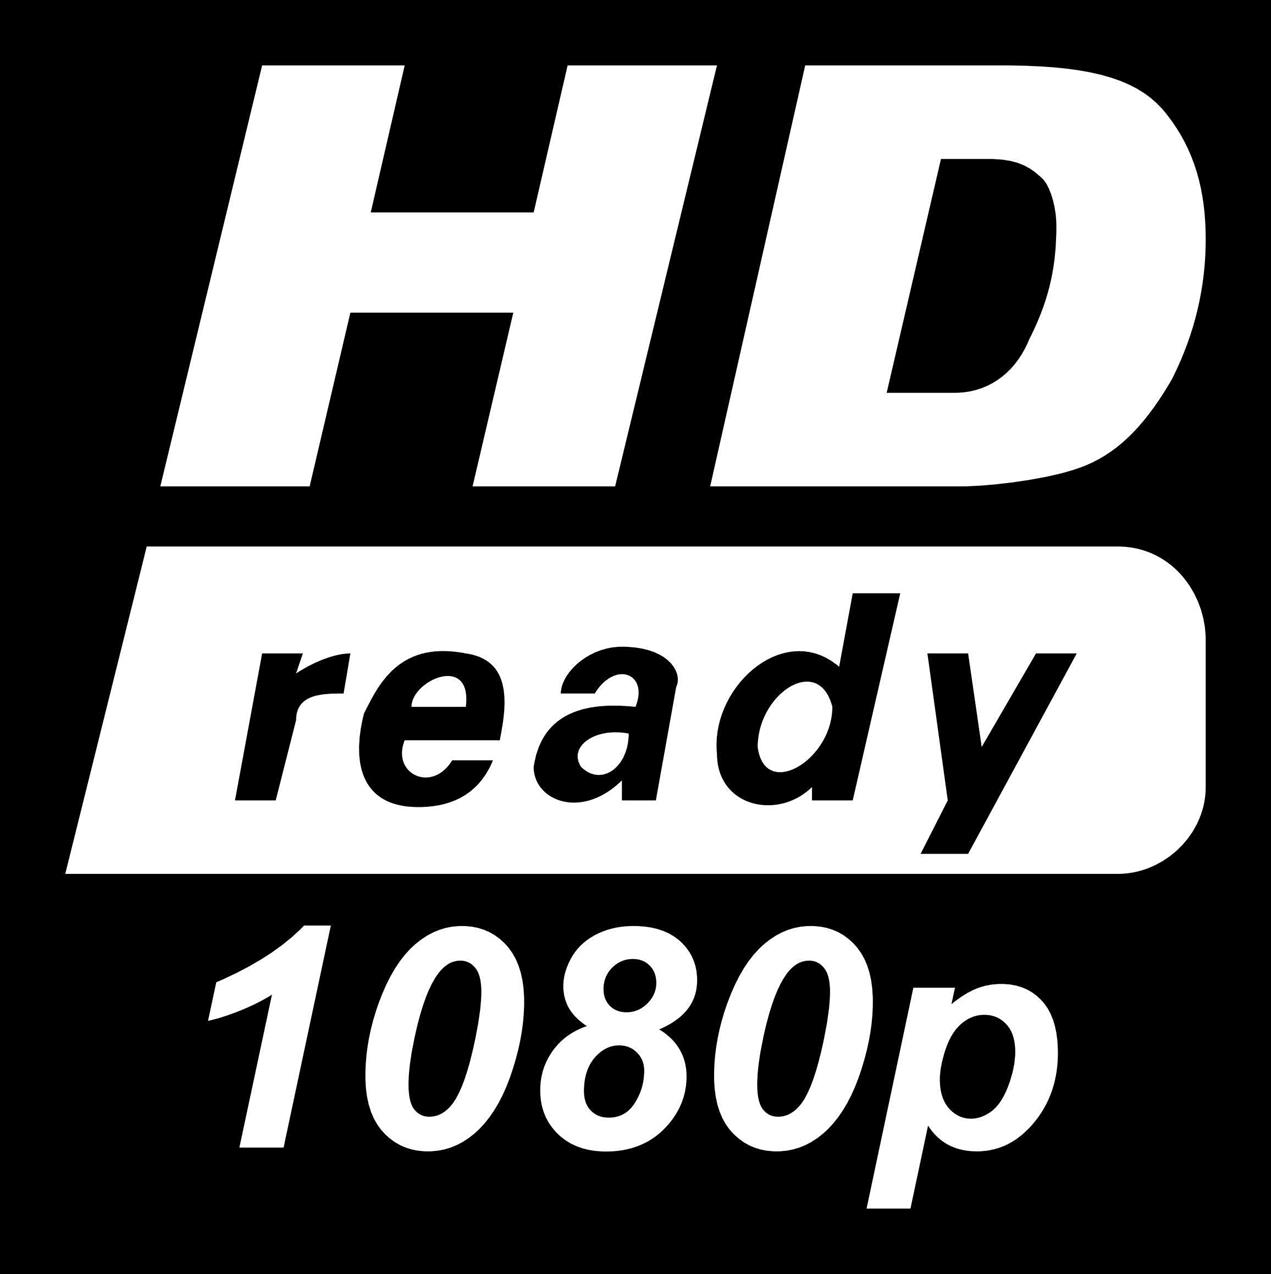 HD ready 1080p logo